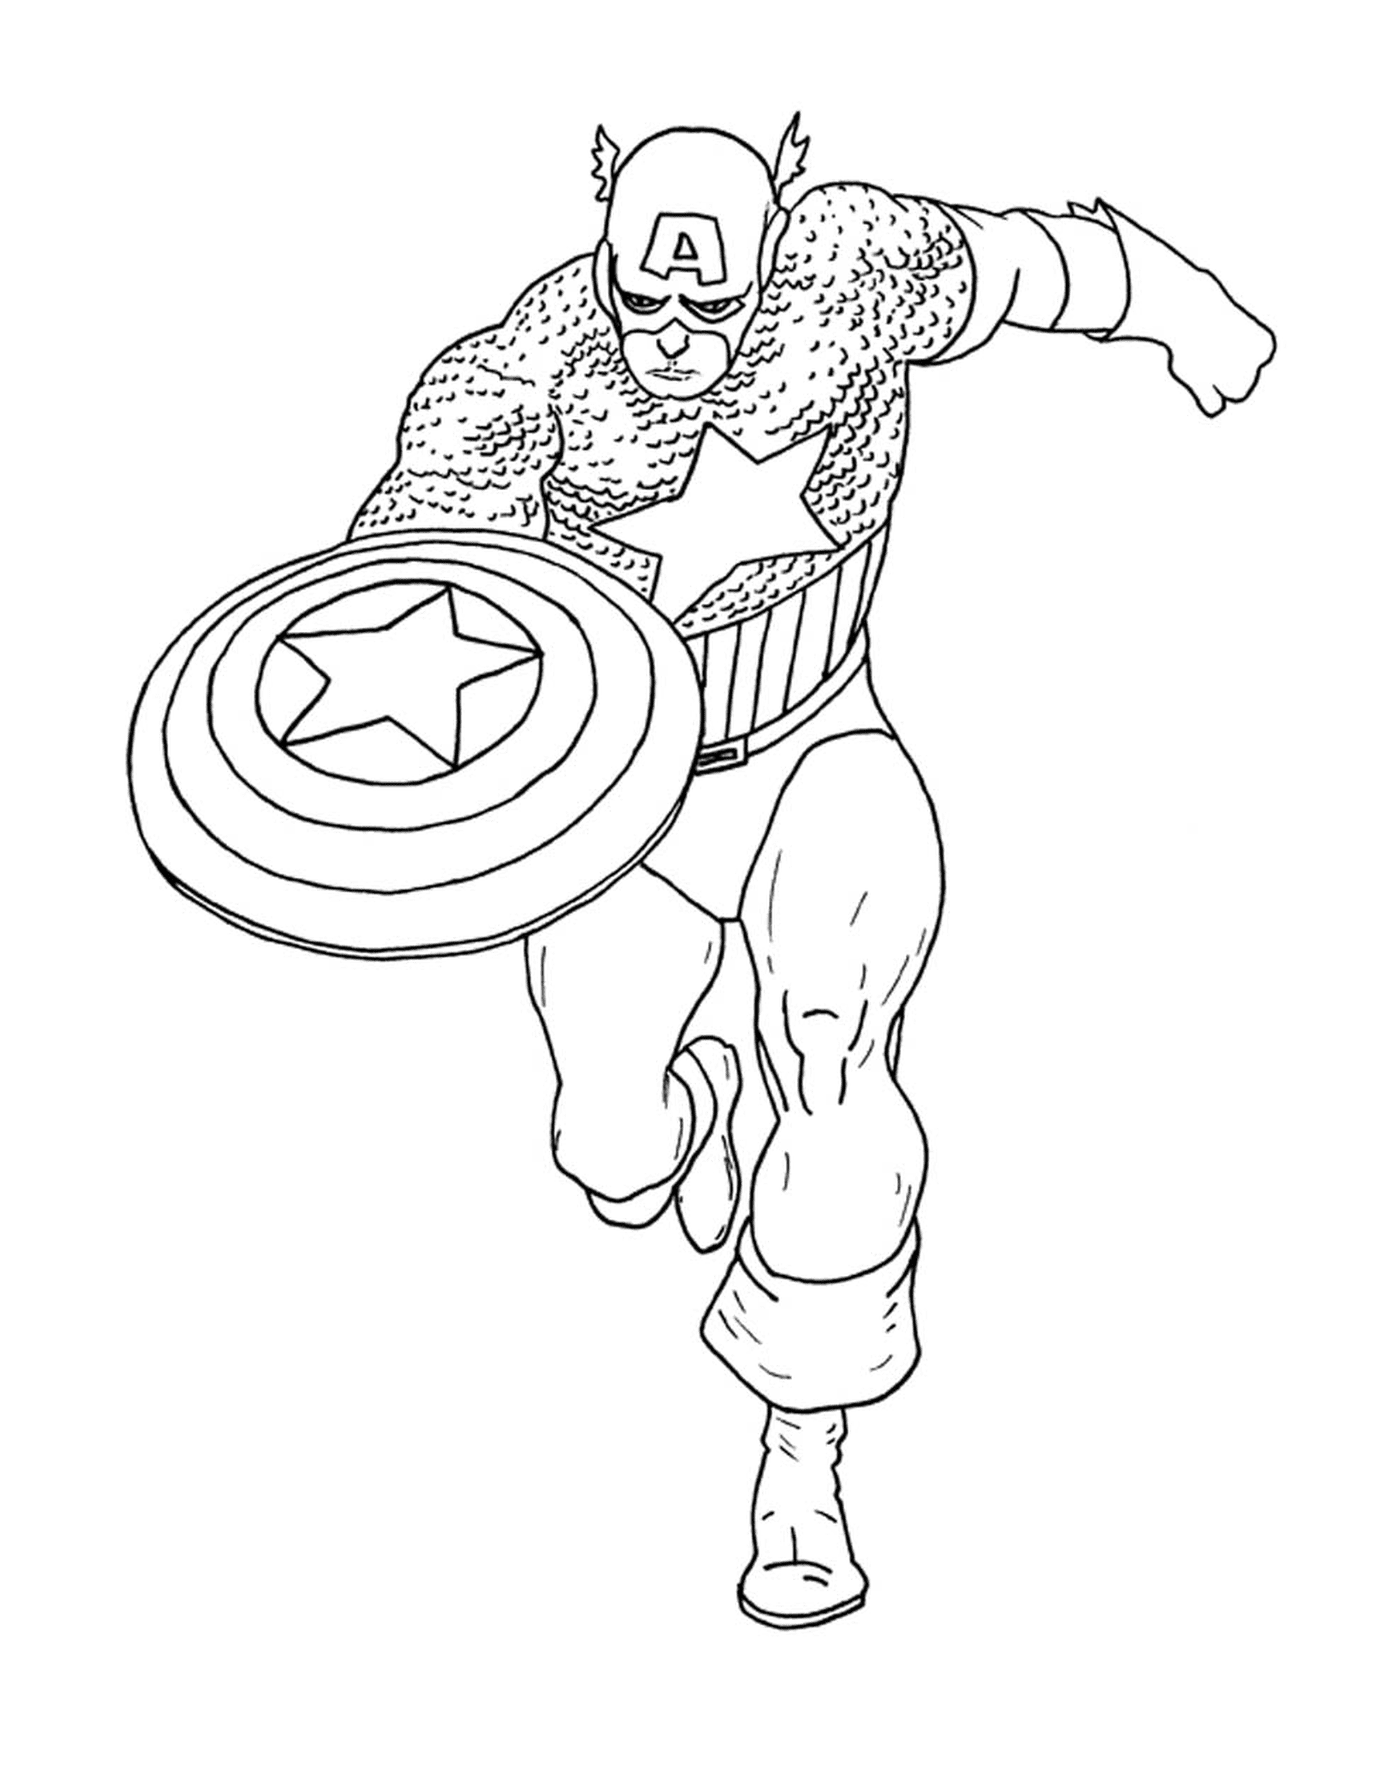   Image d'un héros, Captain America colorié 